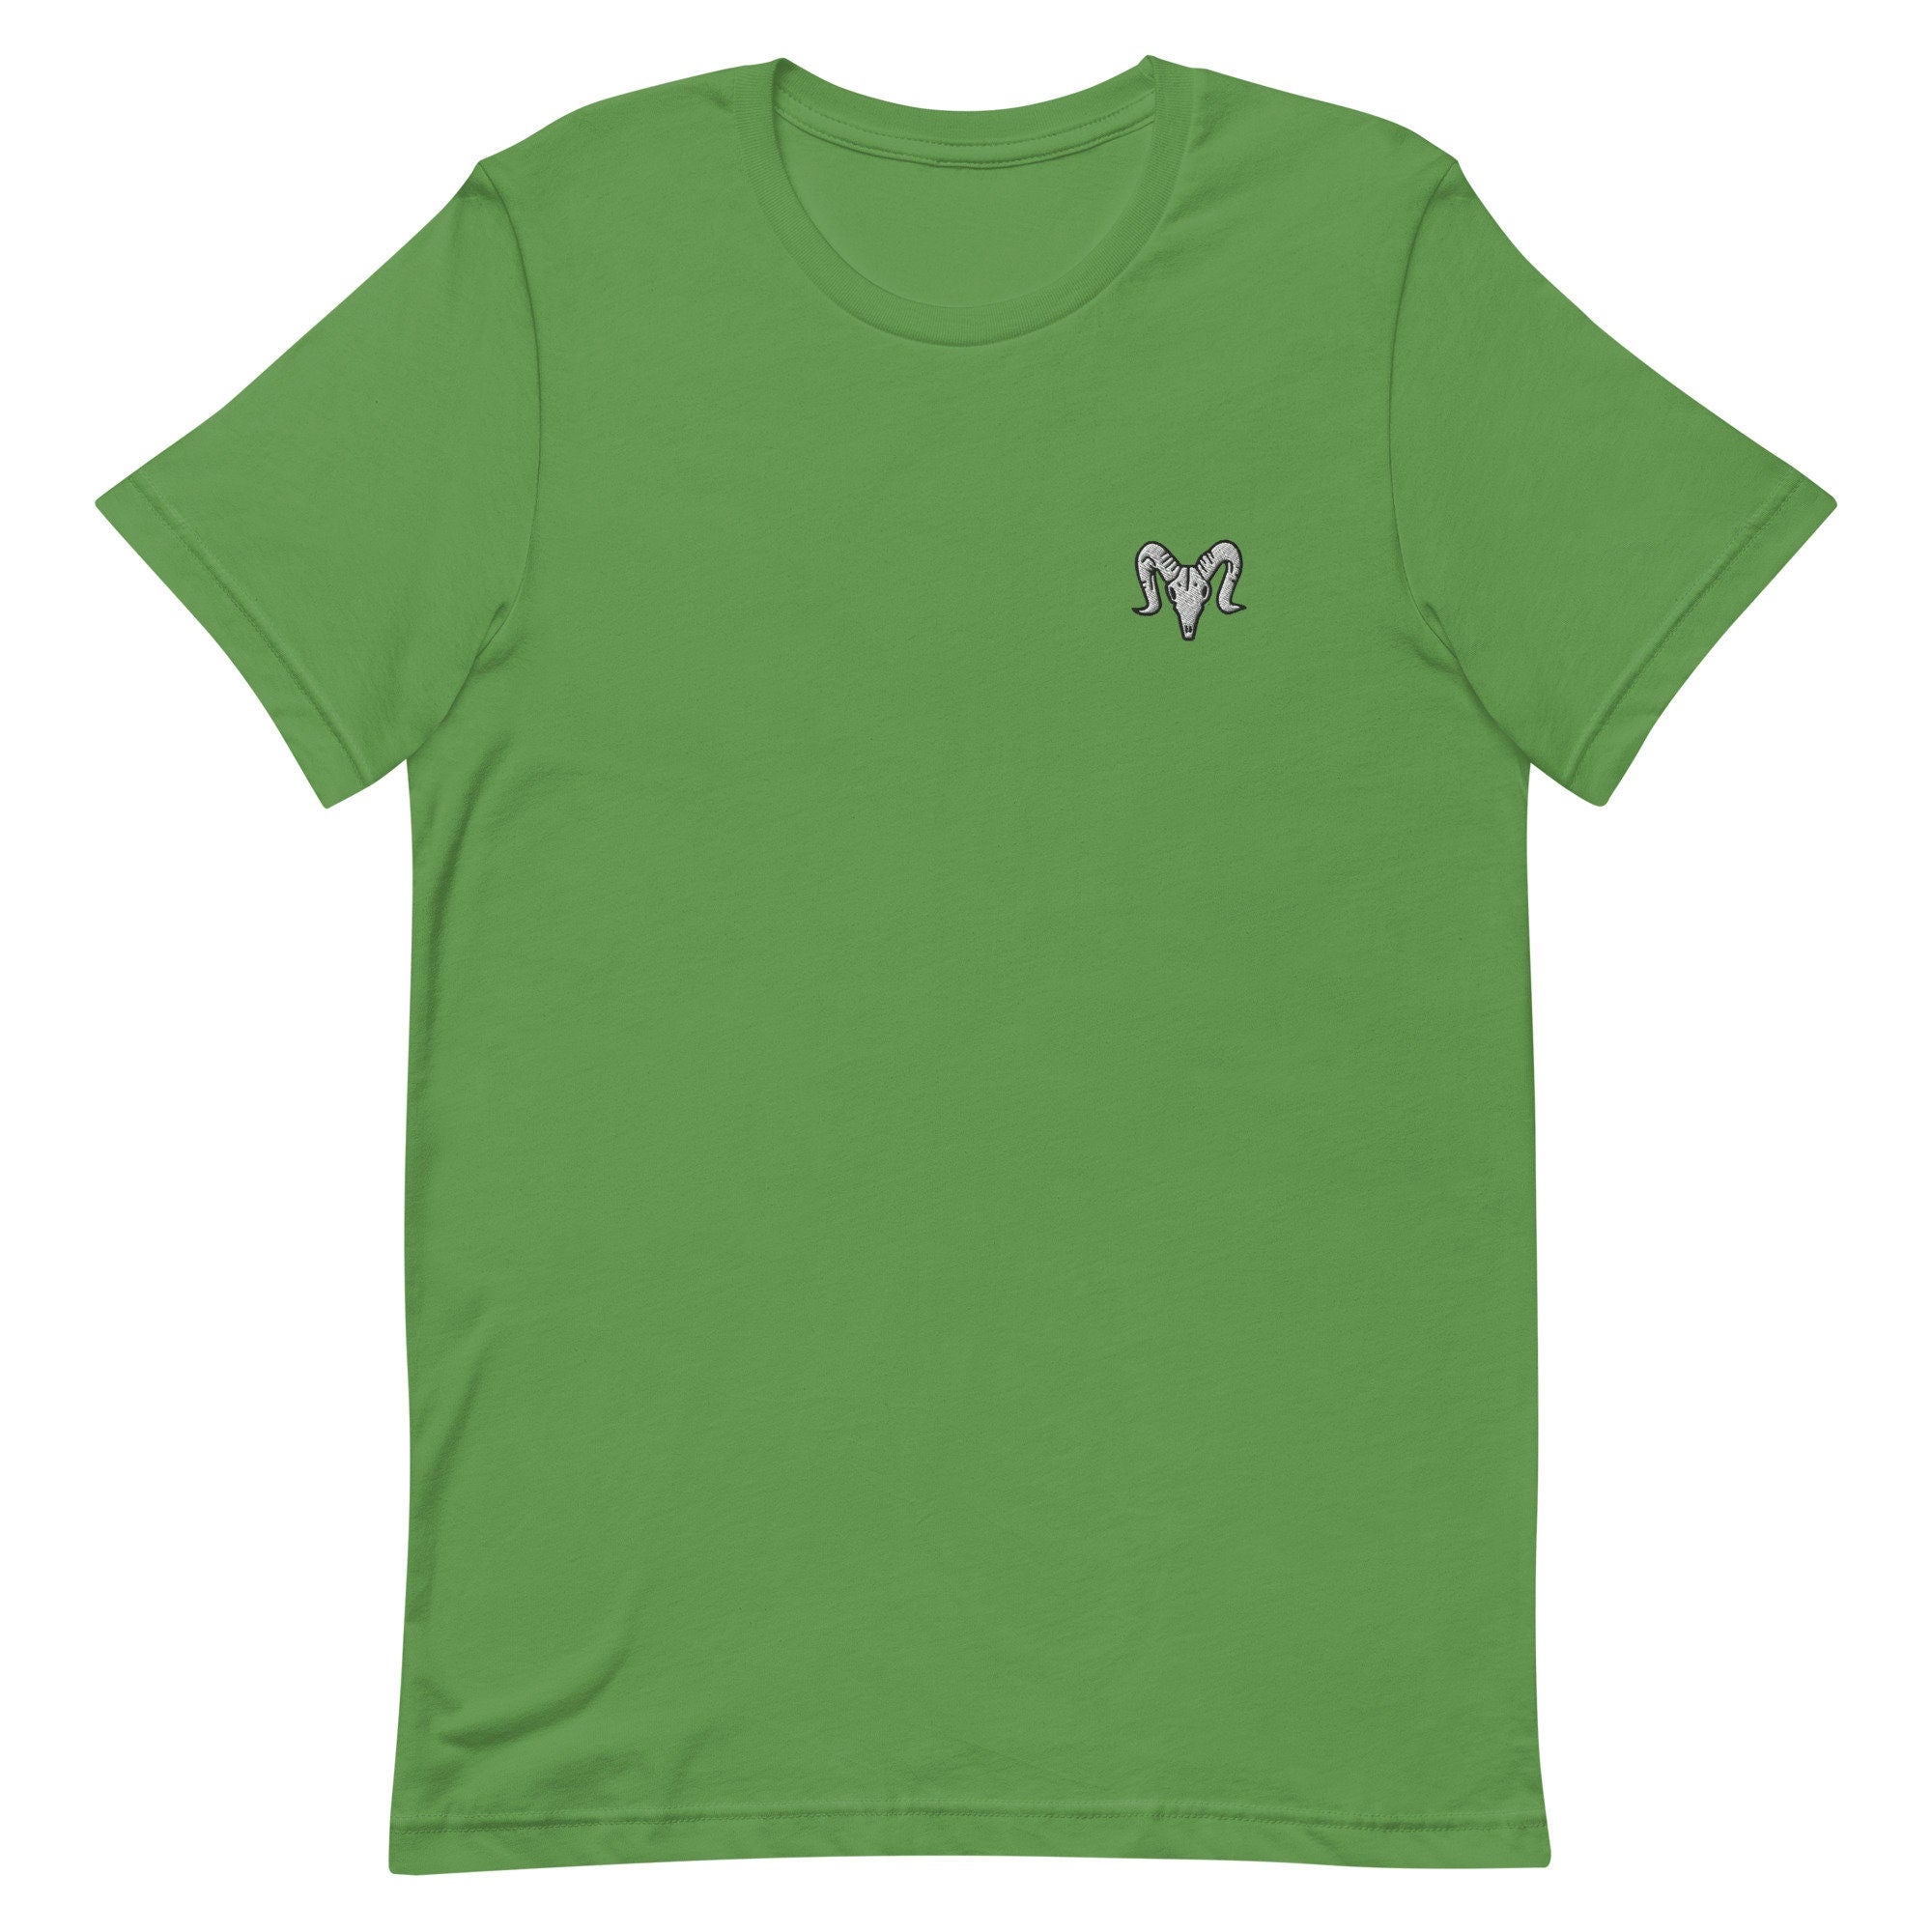 Sheep Skull Premium Men's T-Shirt, Embroidered Men's T-Shirt Gift for Boyfriend, Men's Short Sleeve Shirt - Multiple Colors